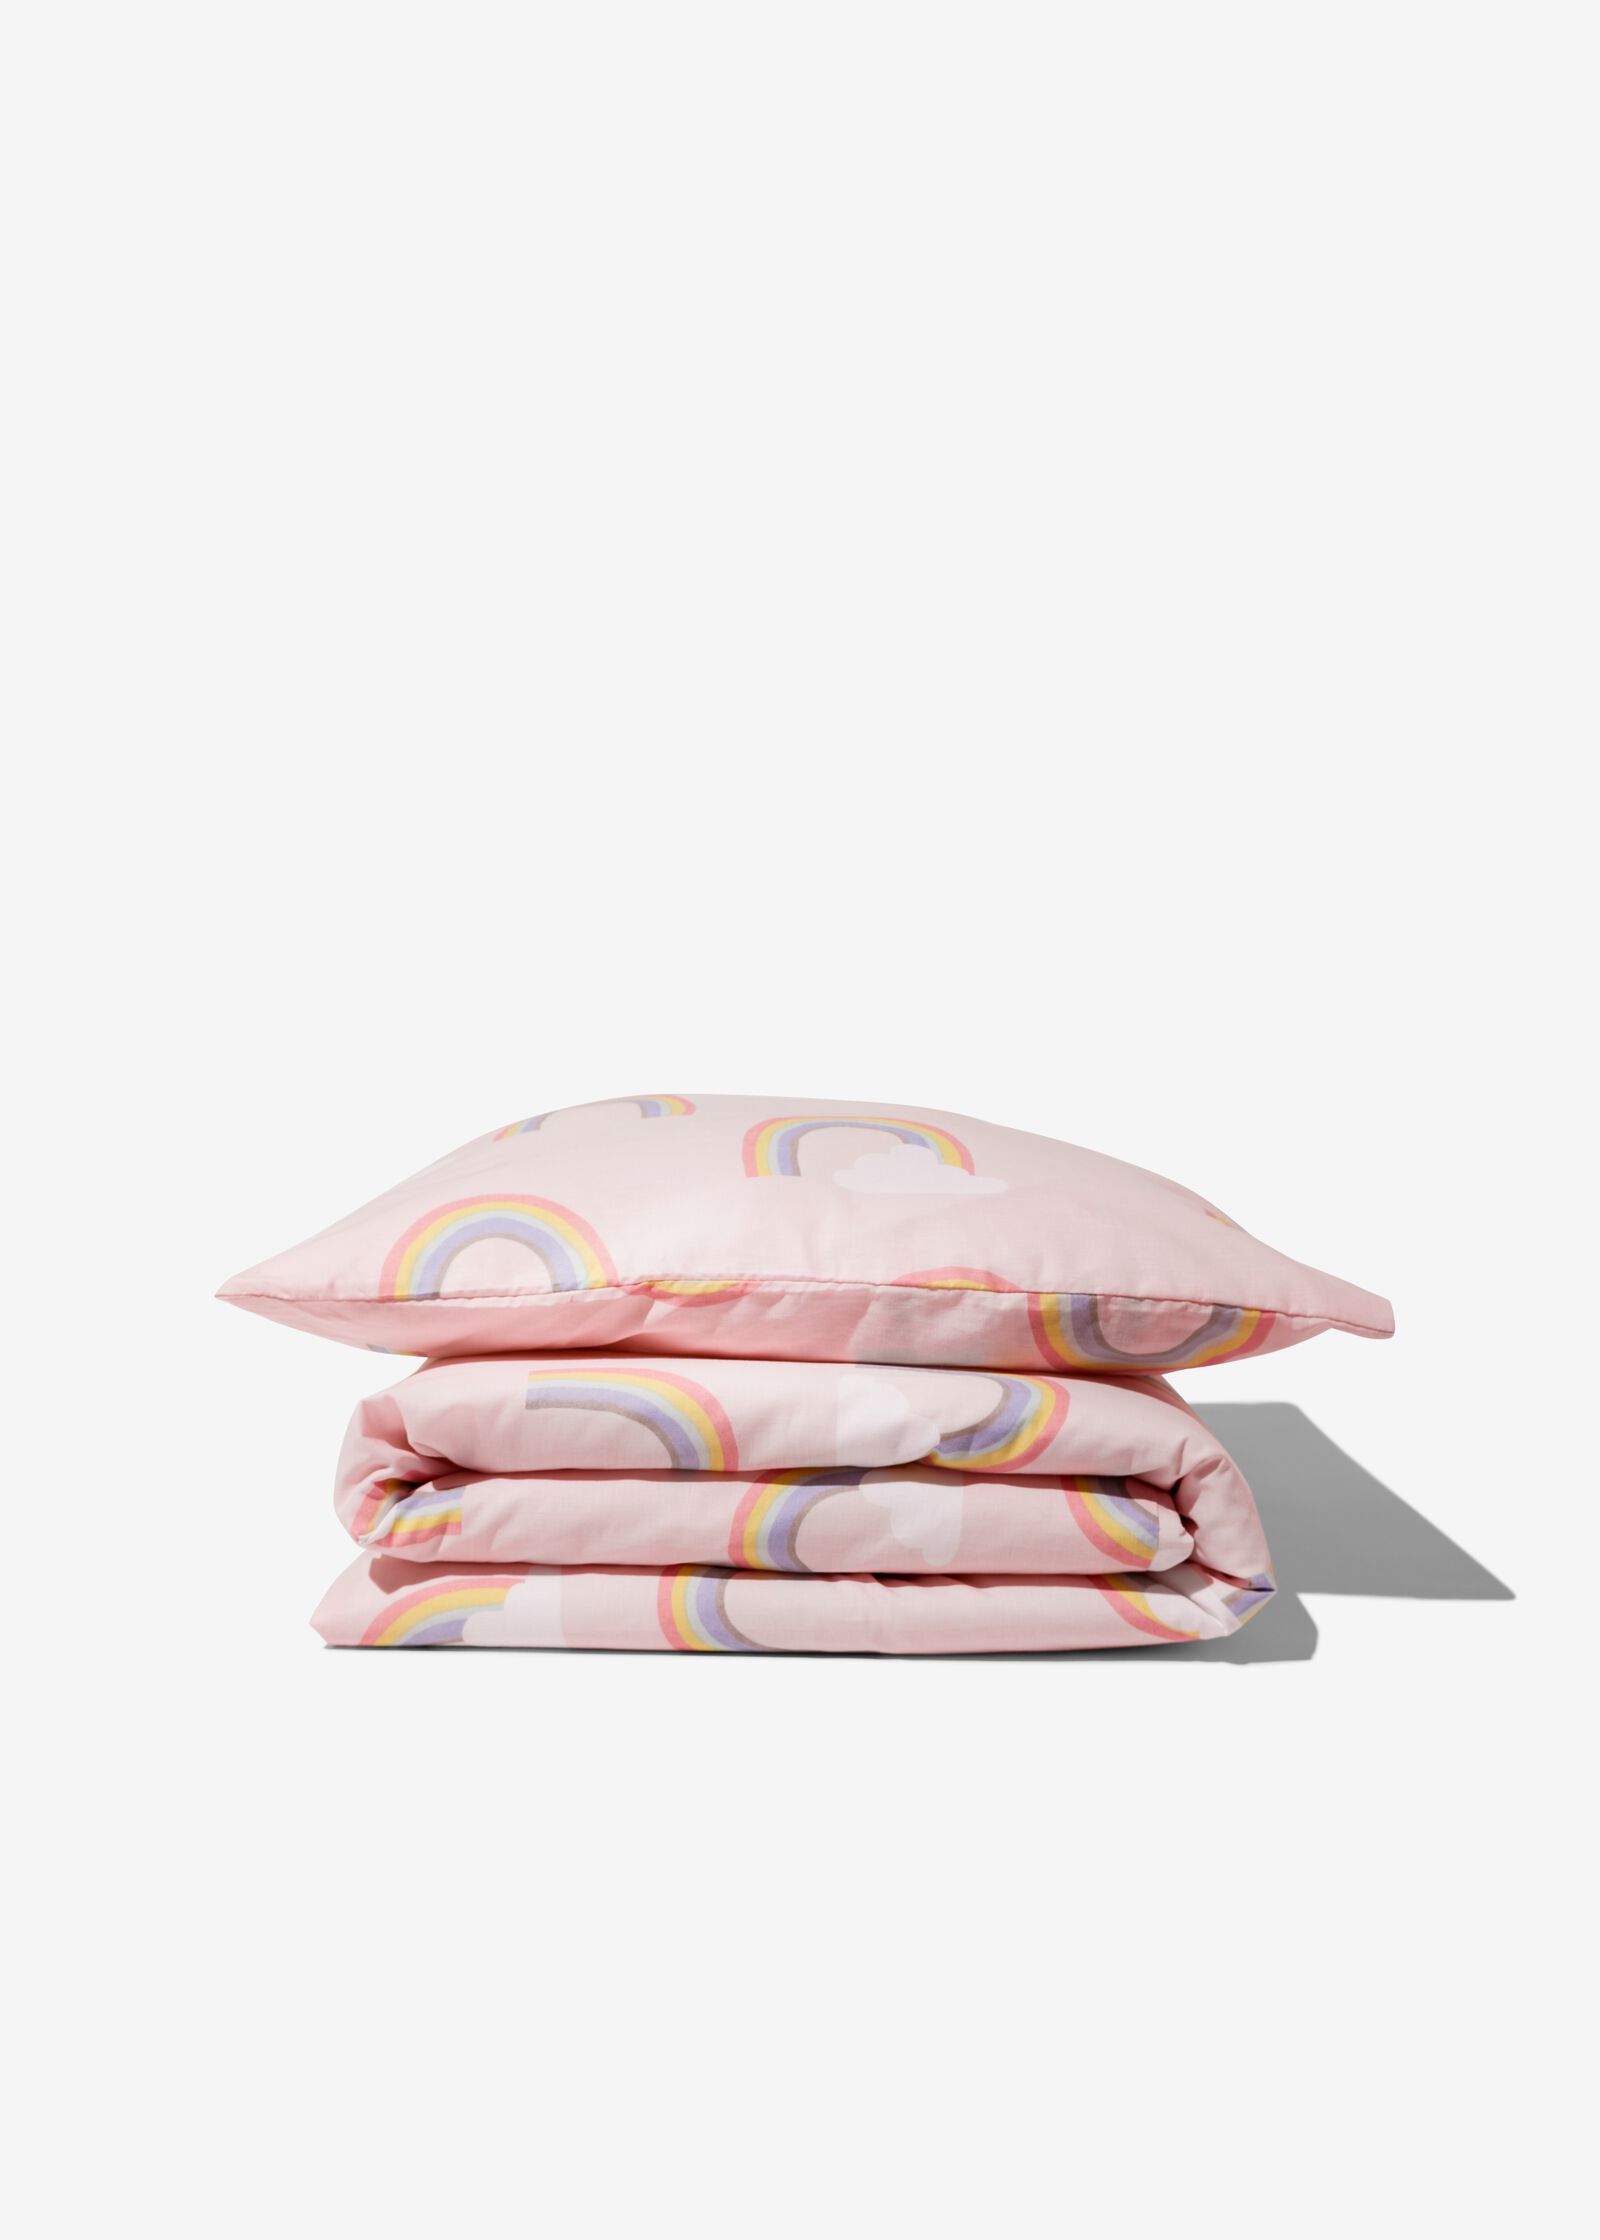 Kinder-Bettwäsche, 120 x 150 cm, Soft Cotton, Regenbogen - 5760050 - HEMA